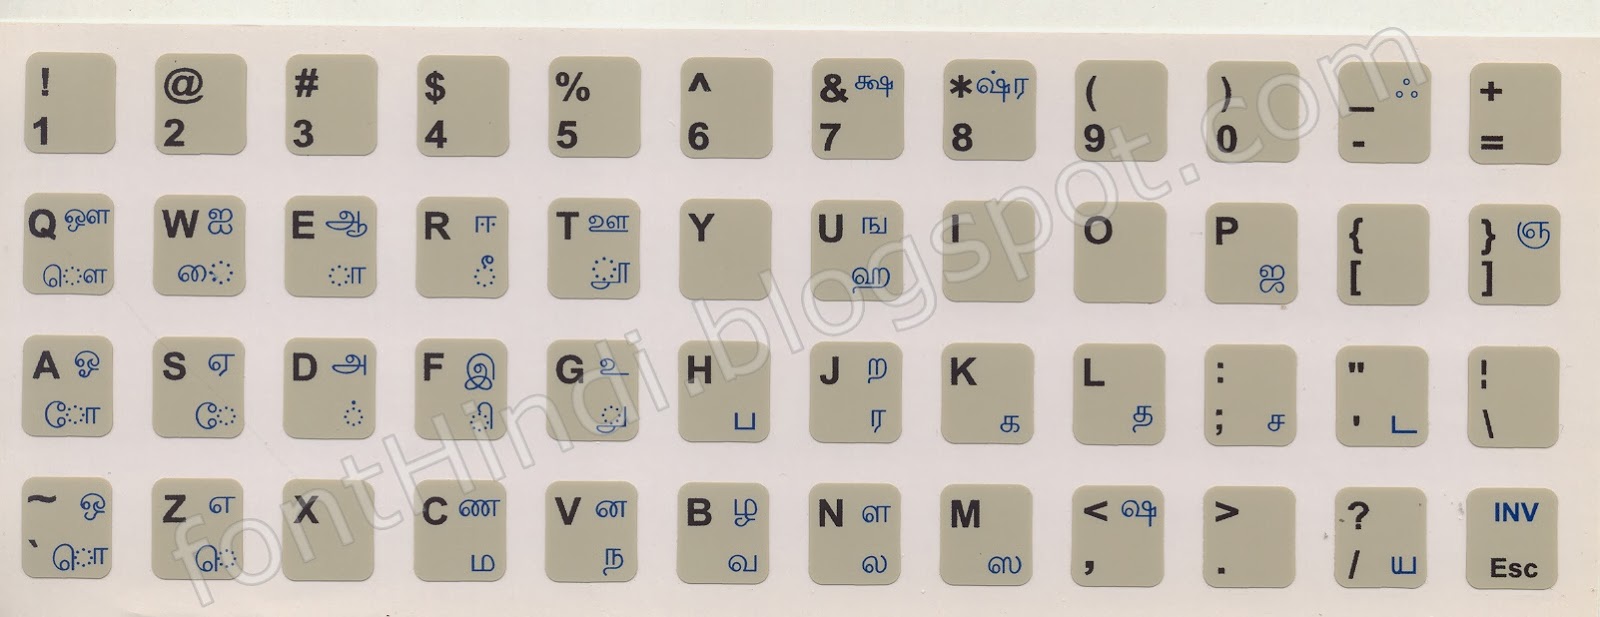 Ka Tamil Fonts Keyboard Layout